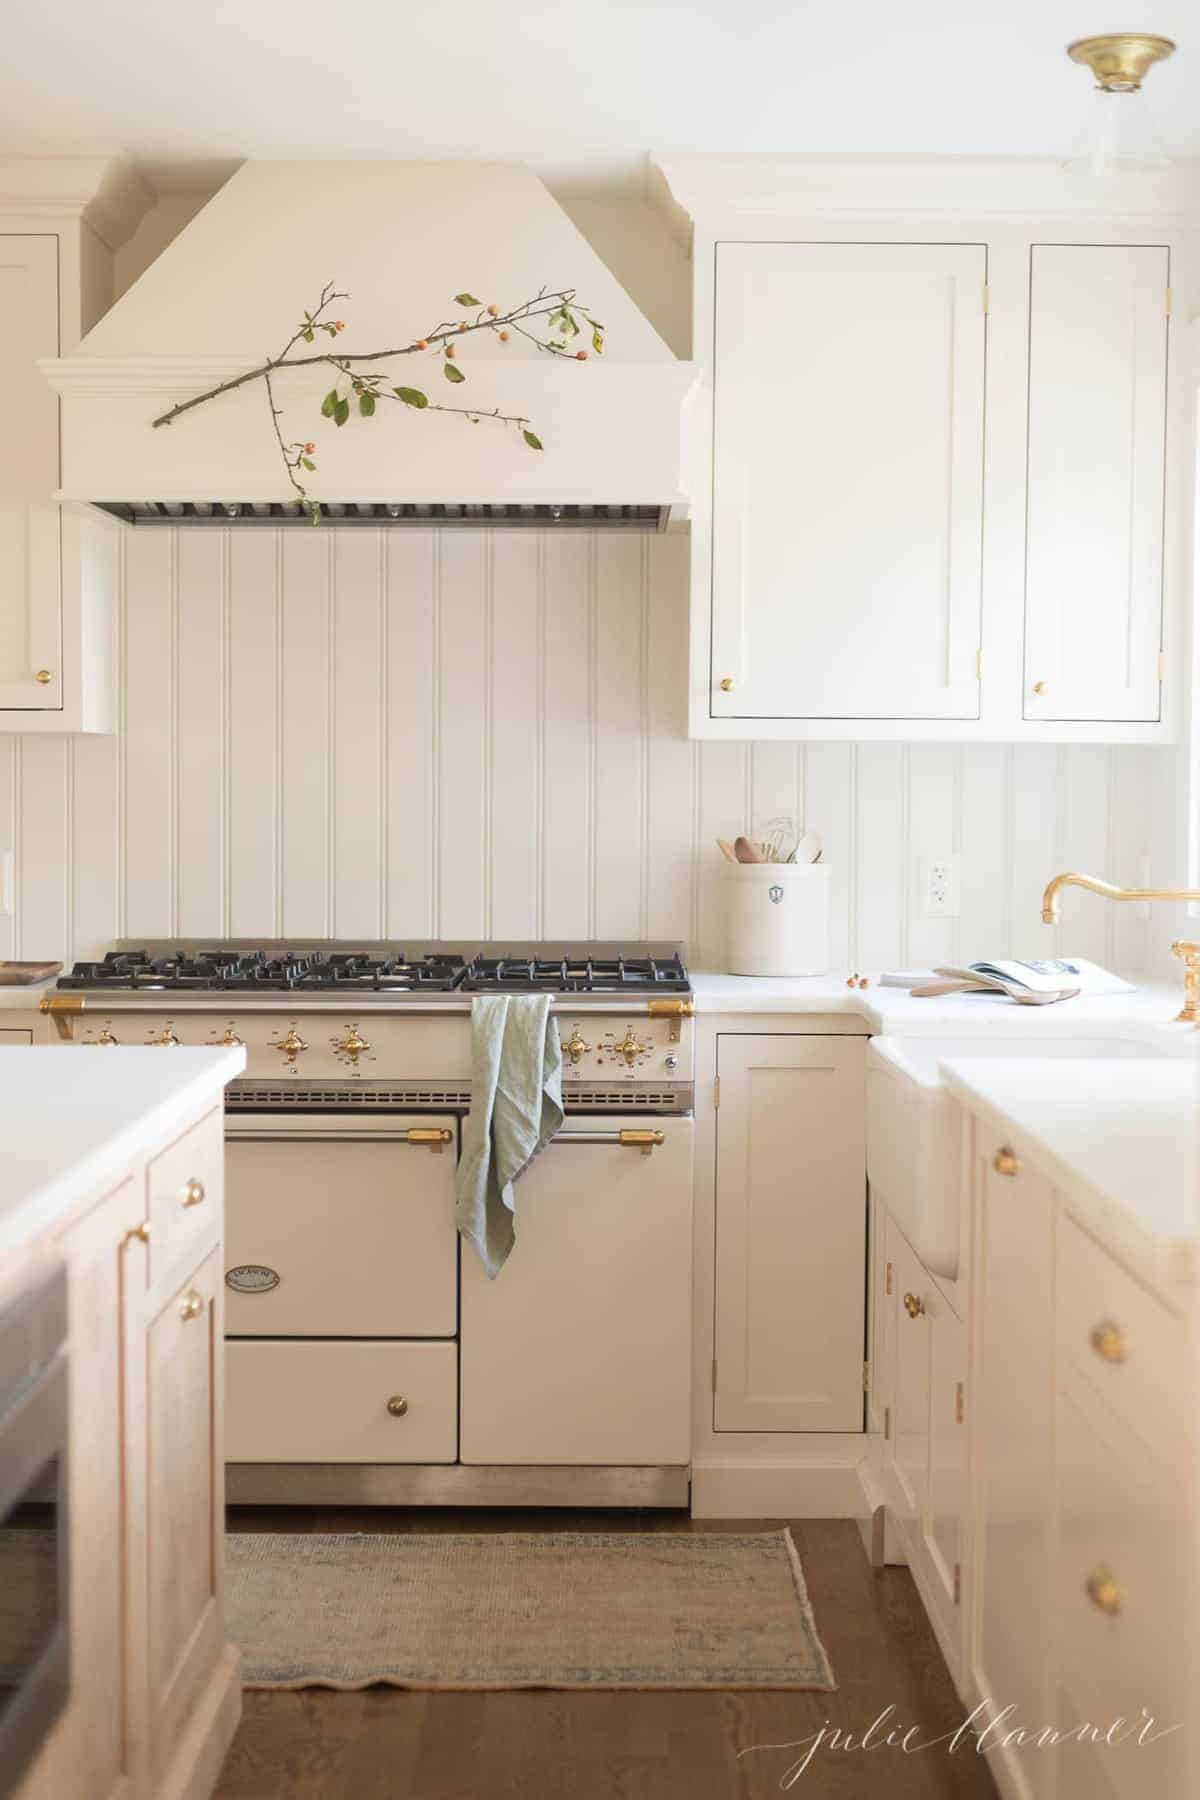 奶油和木厨房用缎面油漆涂在橱柜上。